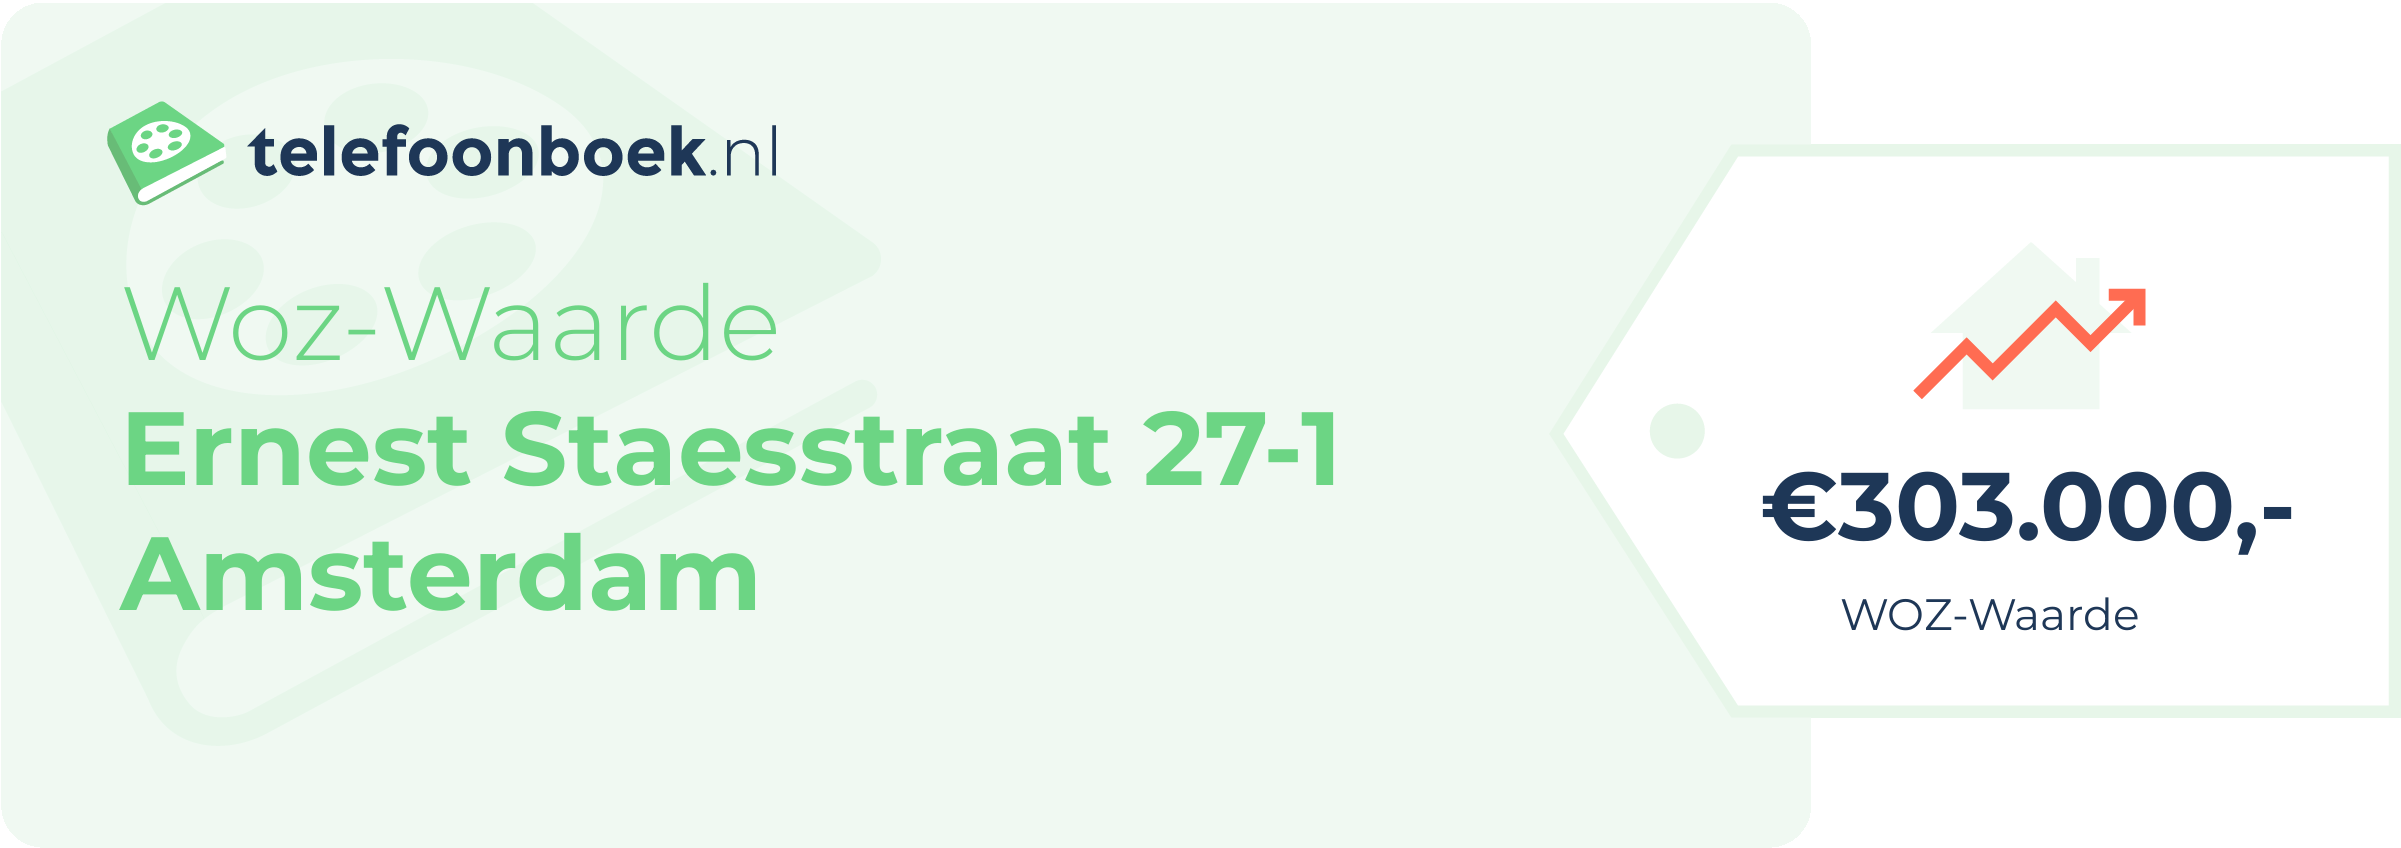 WOZ-waarde Ernest Staesstraat 27-1 Amsterdam